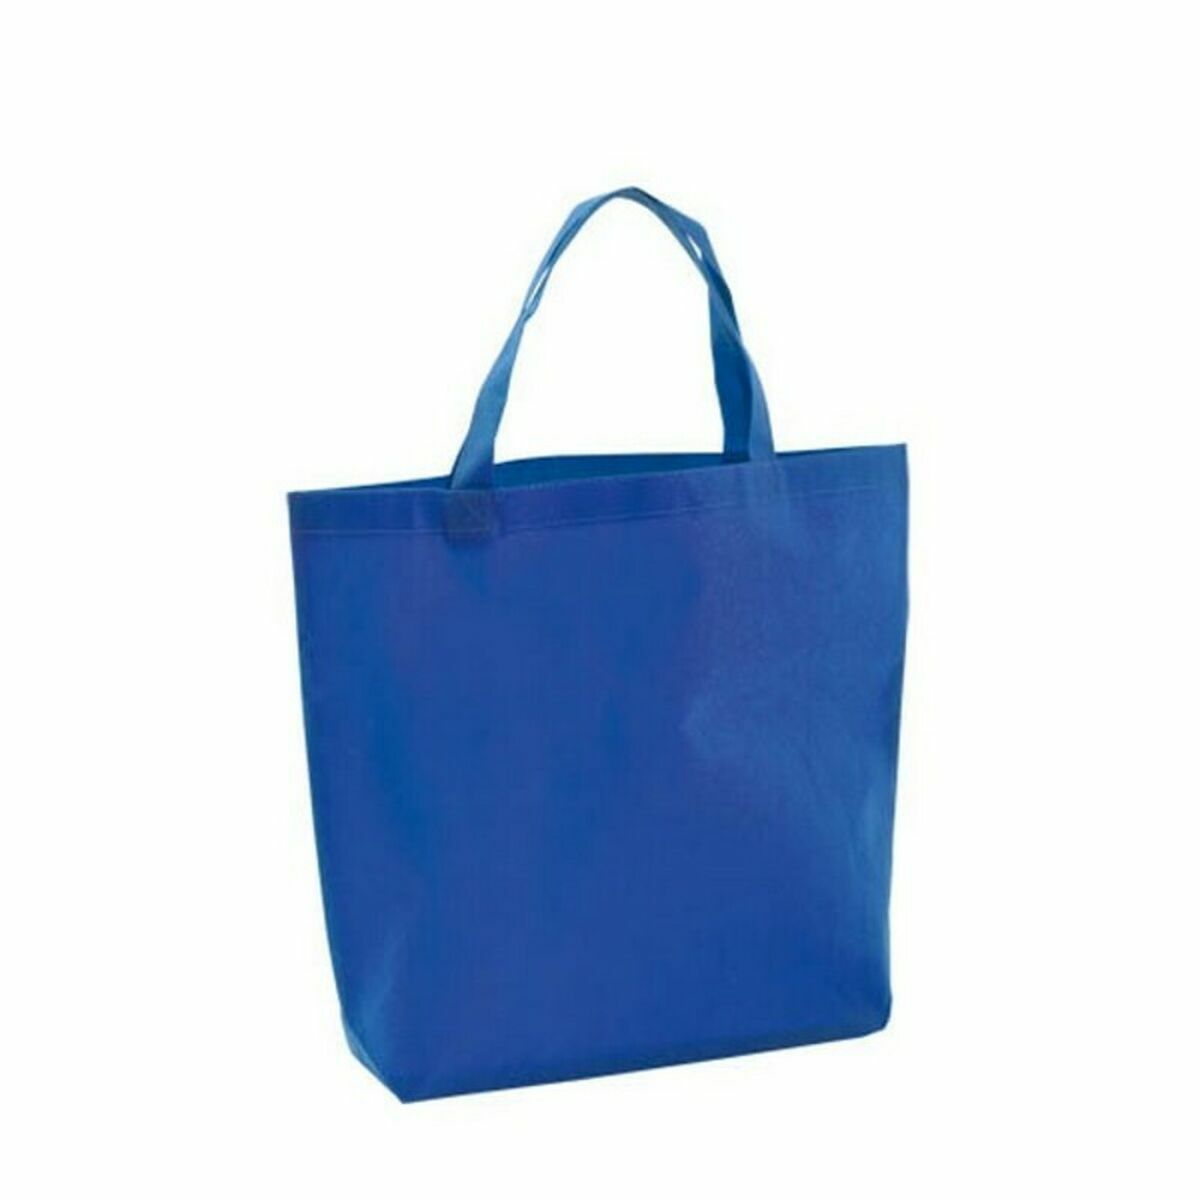 Shopping Bag 143244 (10 Unità)